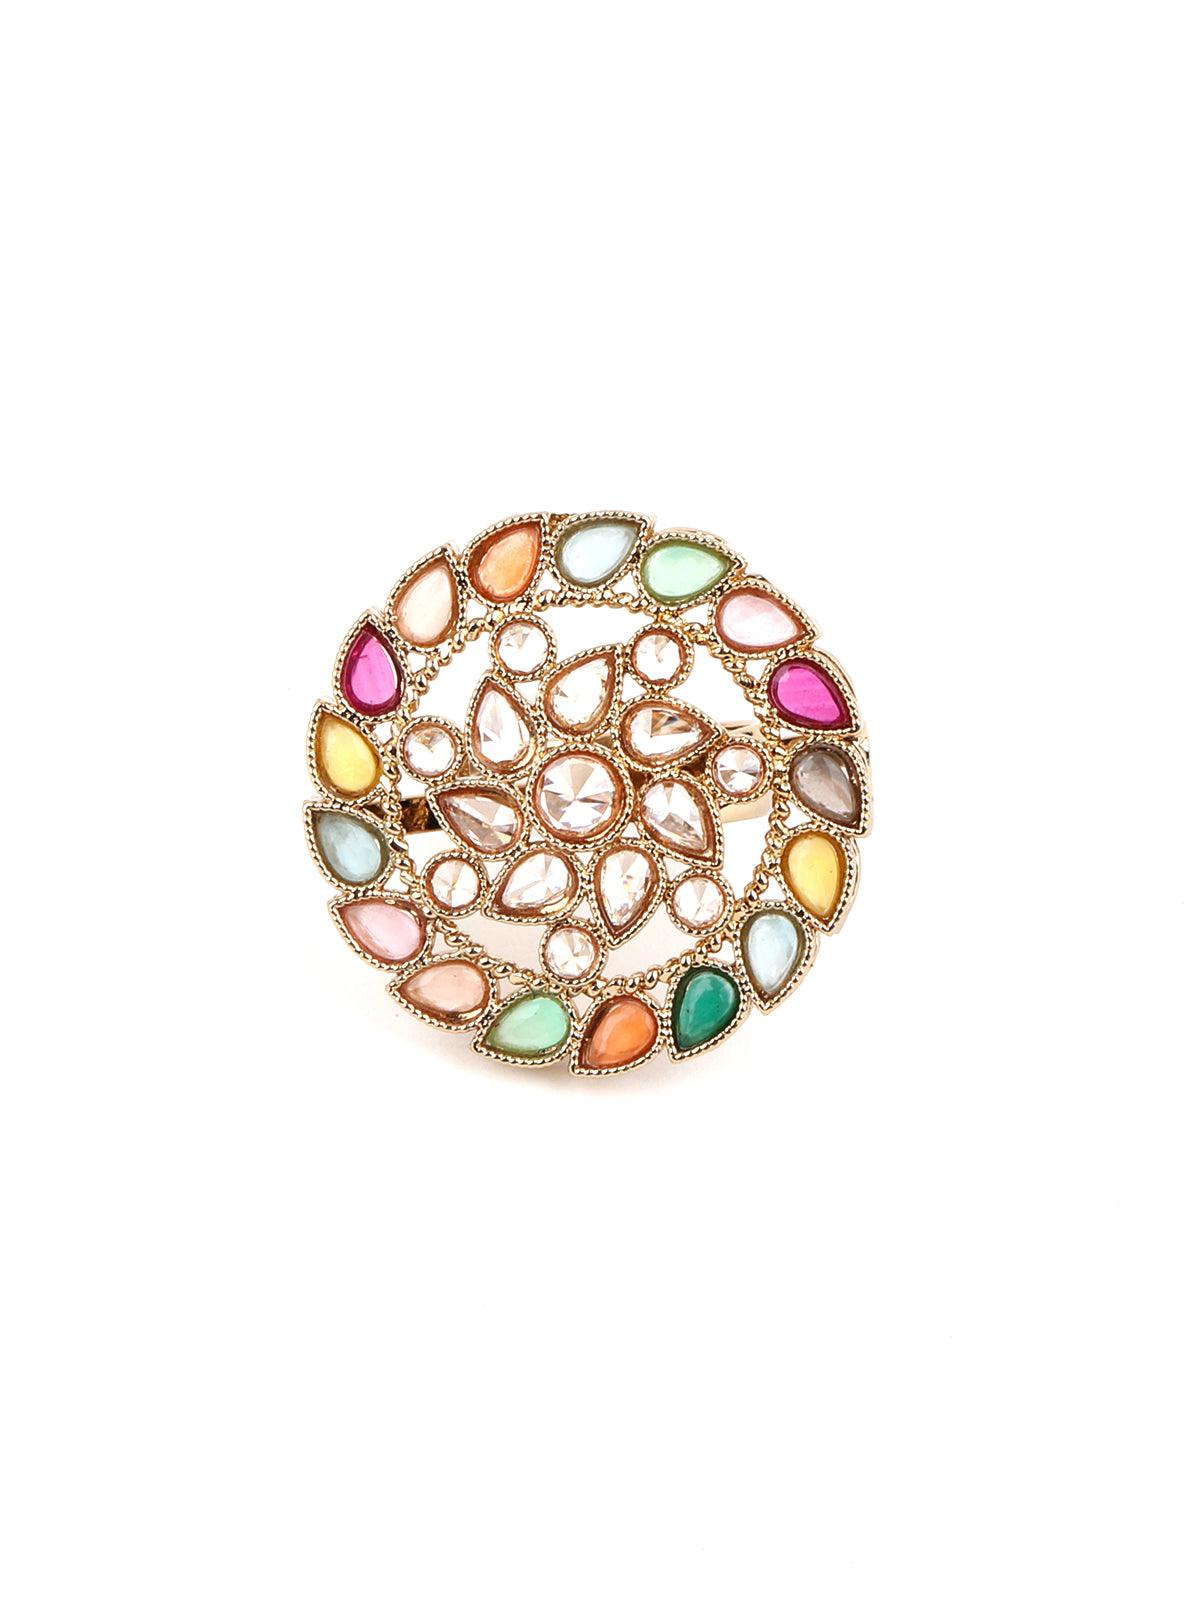 Multicolor Round Finger Ring - Odette